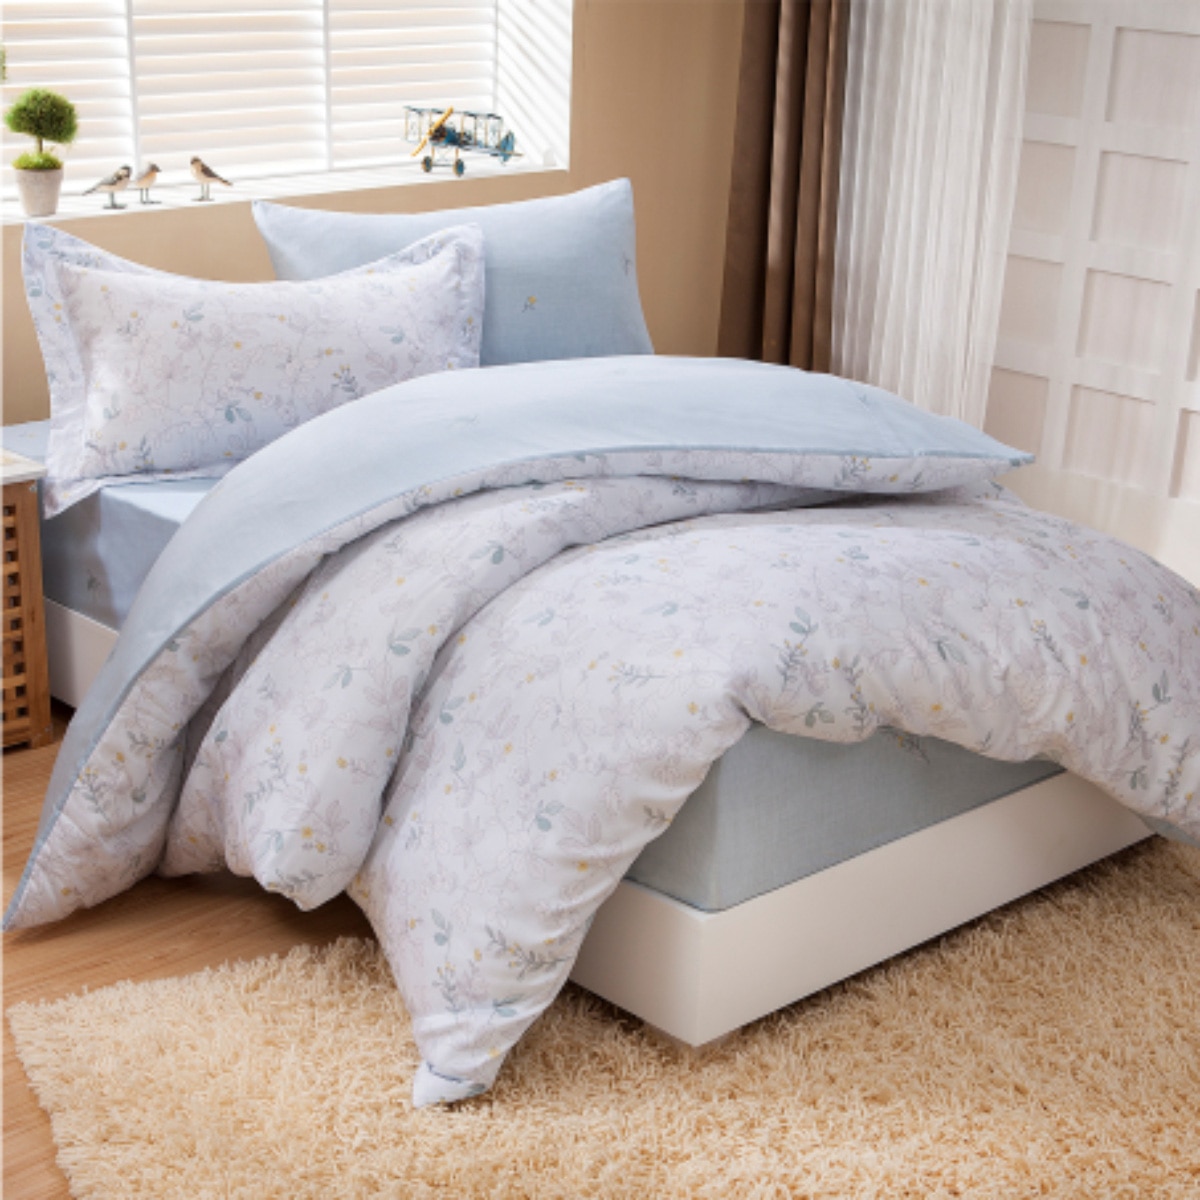 CASA 親膚床包被套枕套採用萊賽爾天然木漿纖維所製成的床包、被套、枕套等床上用品，天然親膚性佳，如絲般光澤精美手工縫製。